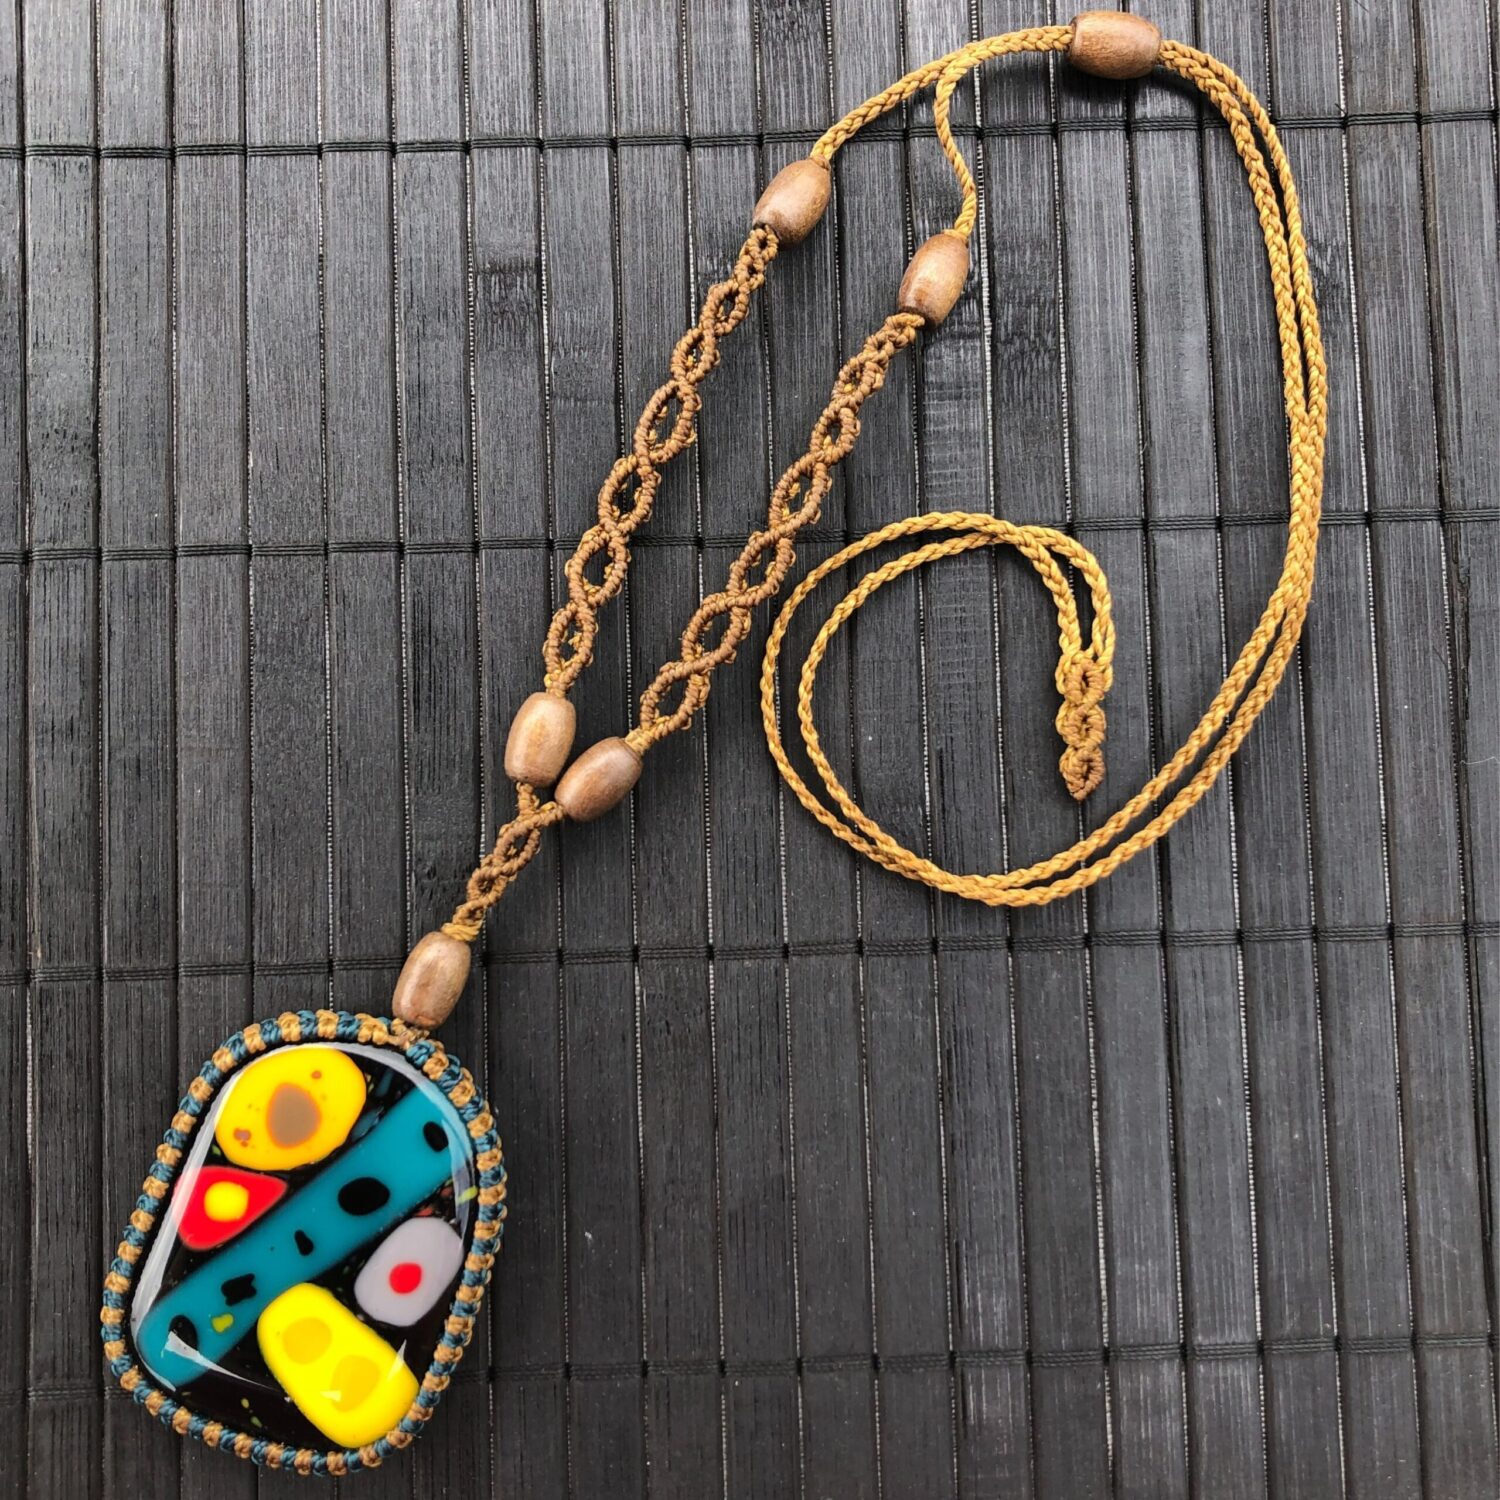 O colar Harmonitribe traz uma sensação de paz, conexão e comunidade. O design harmonioso é perfeito para quem procura uma peça única e artística.